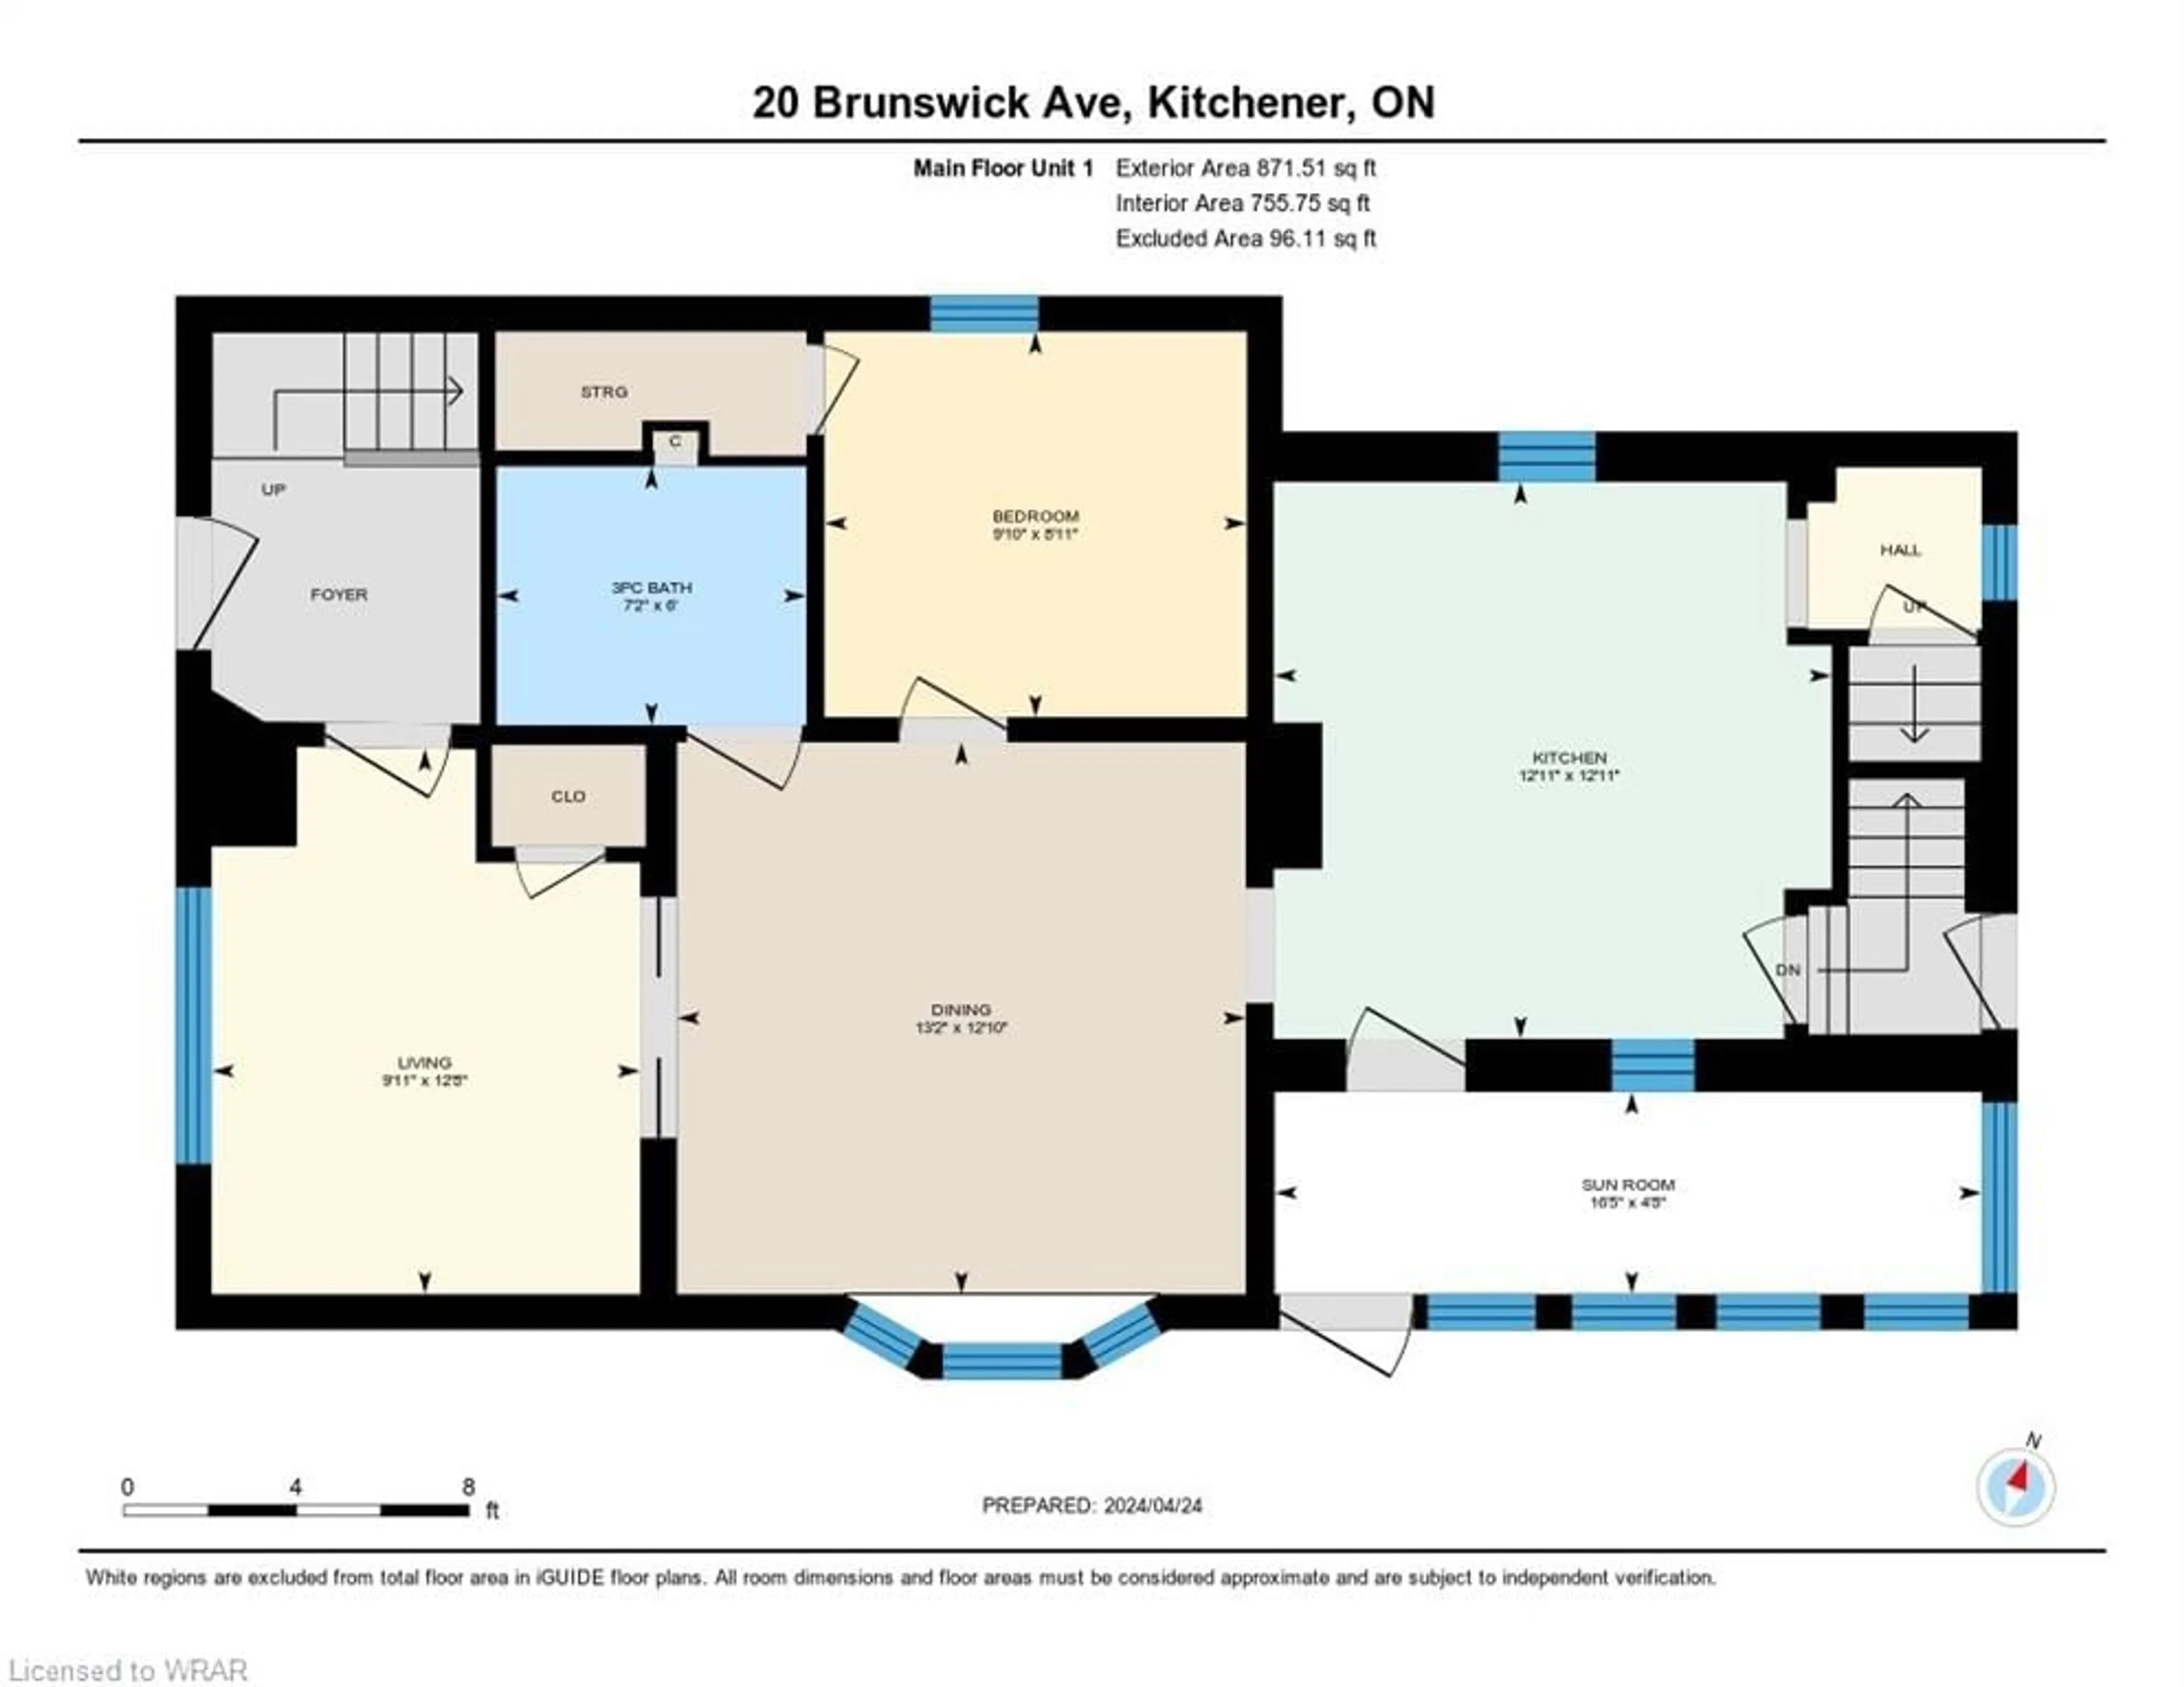 Floor plan for 20 Brunswick Ave, Kitchener Ontario N2H 4E6